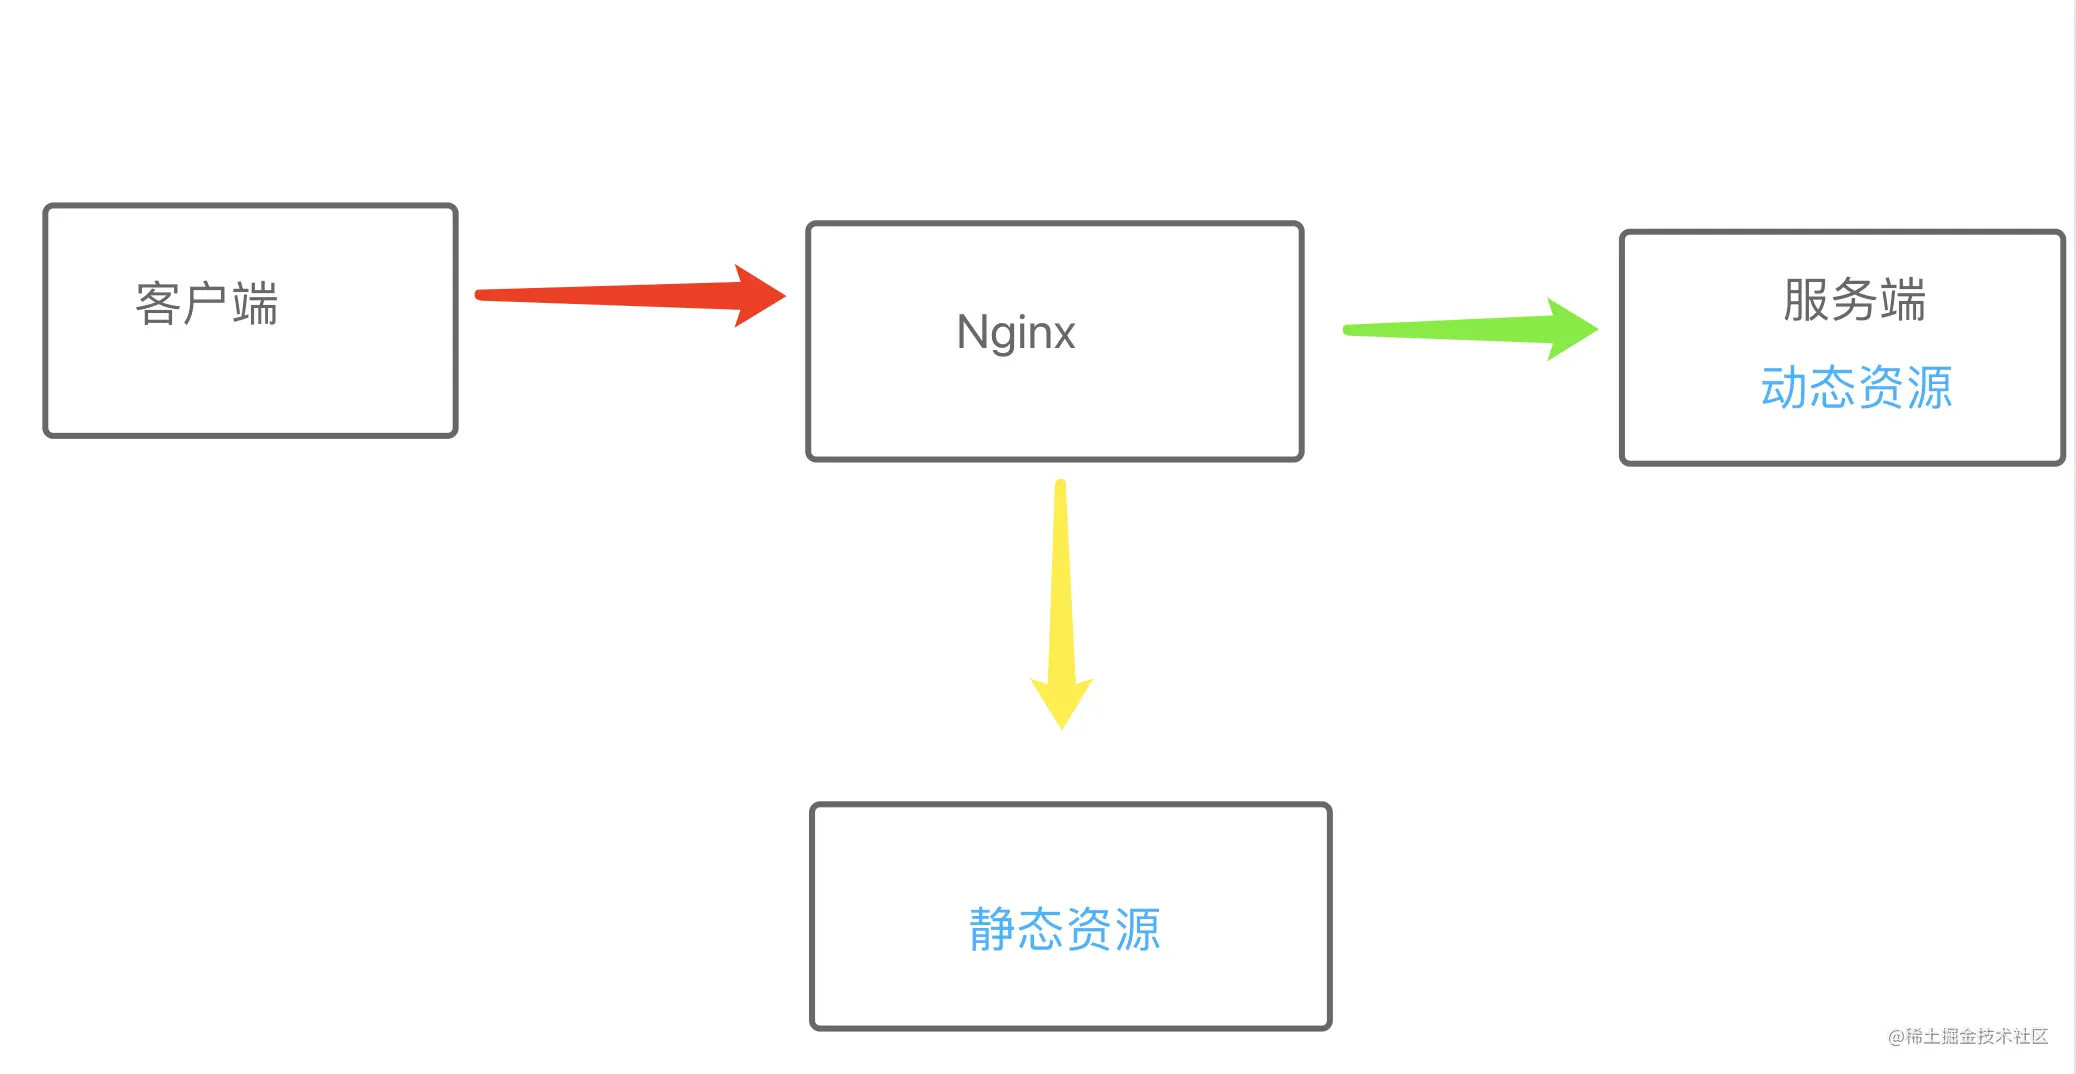 作为一名前端，该如何理解Nginx？